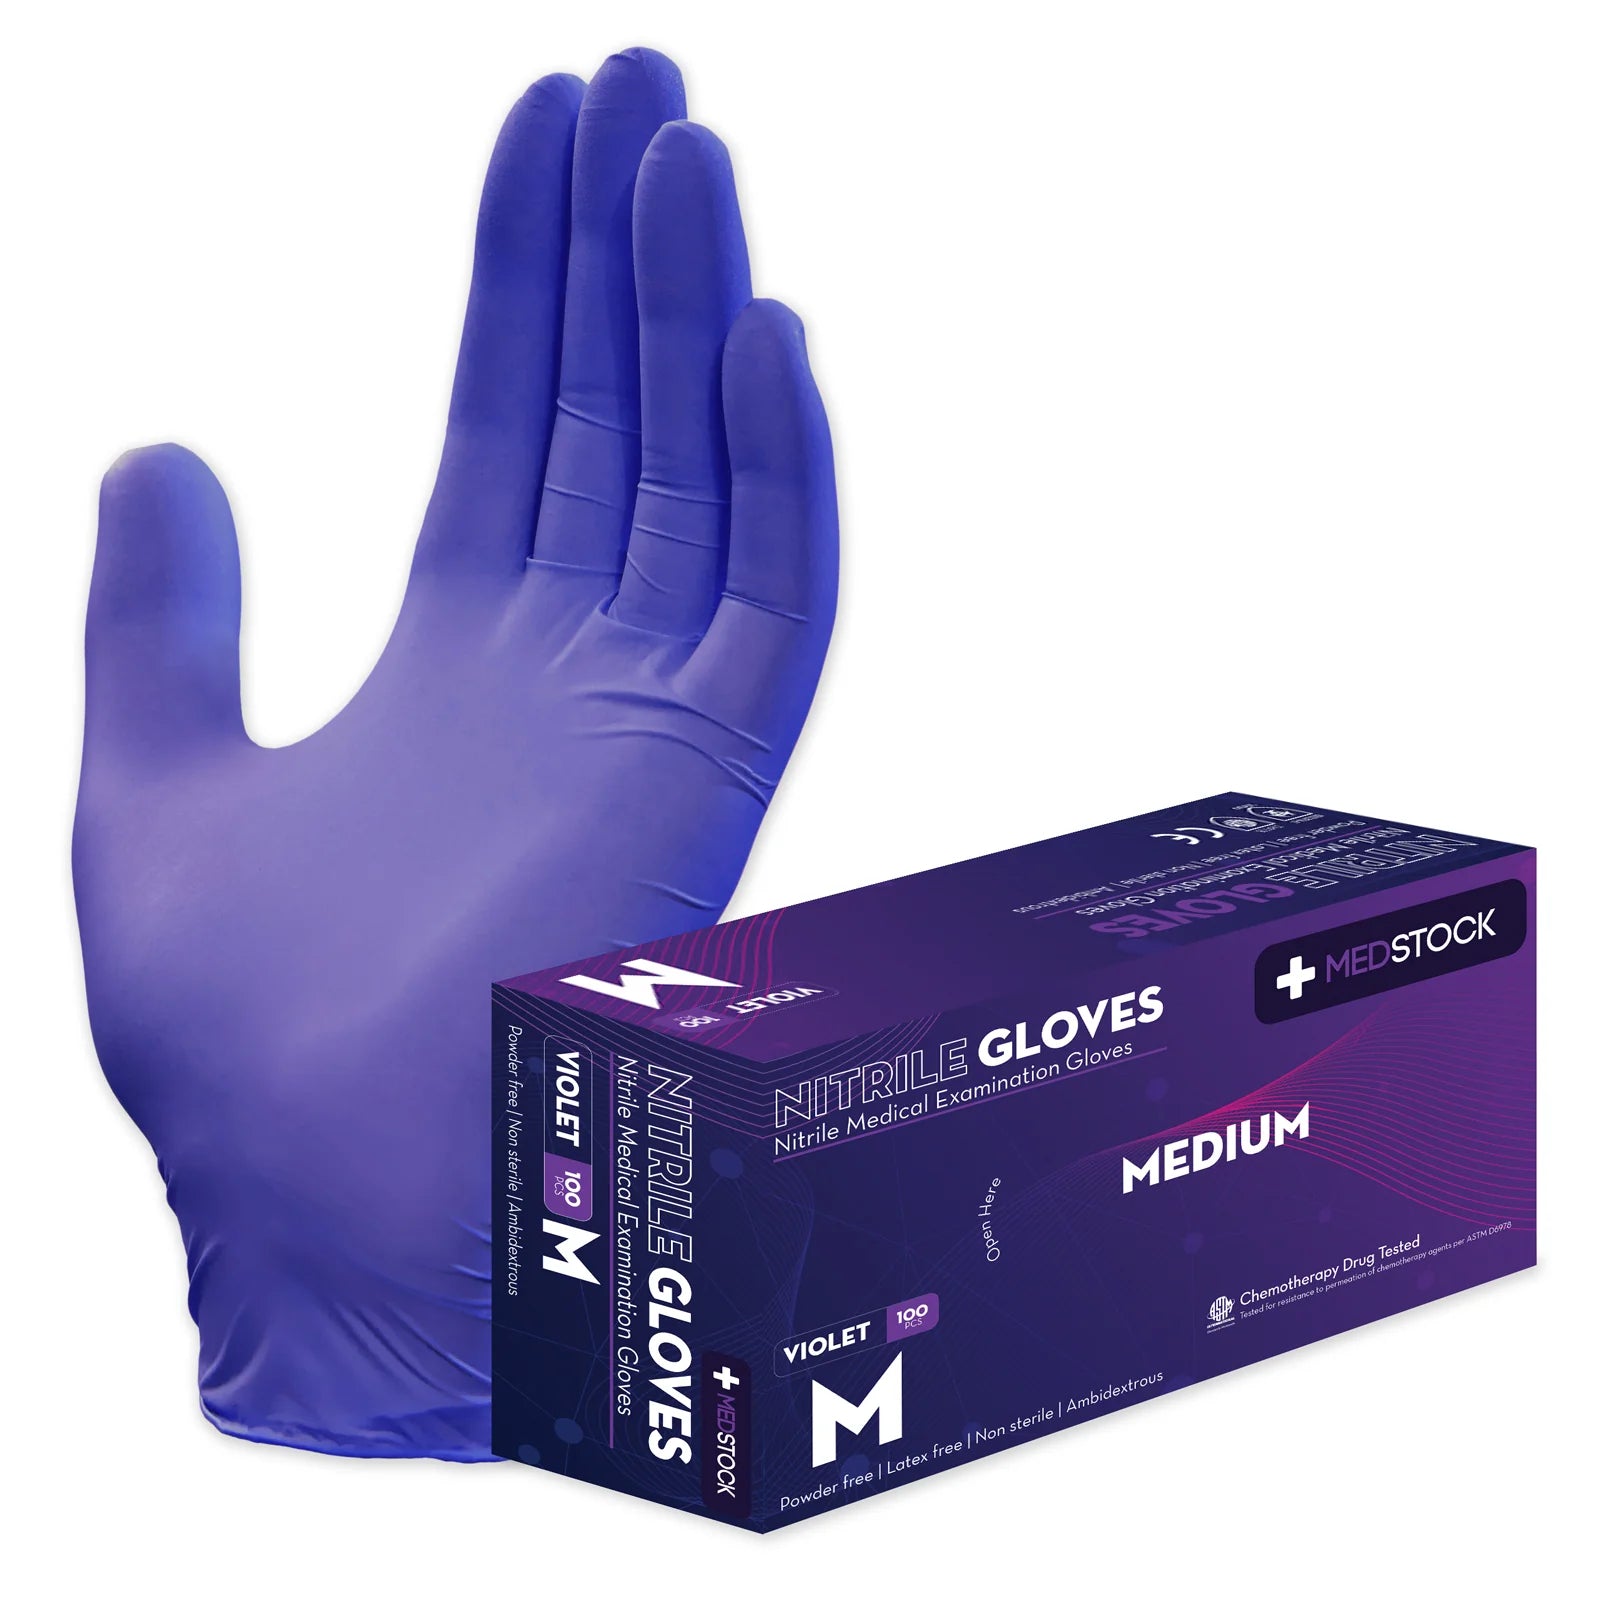 Medstock Violet Nitrile Medical Examination Gloves -Box of 100